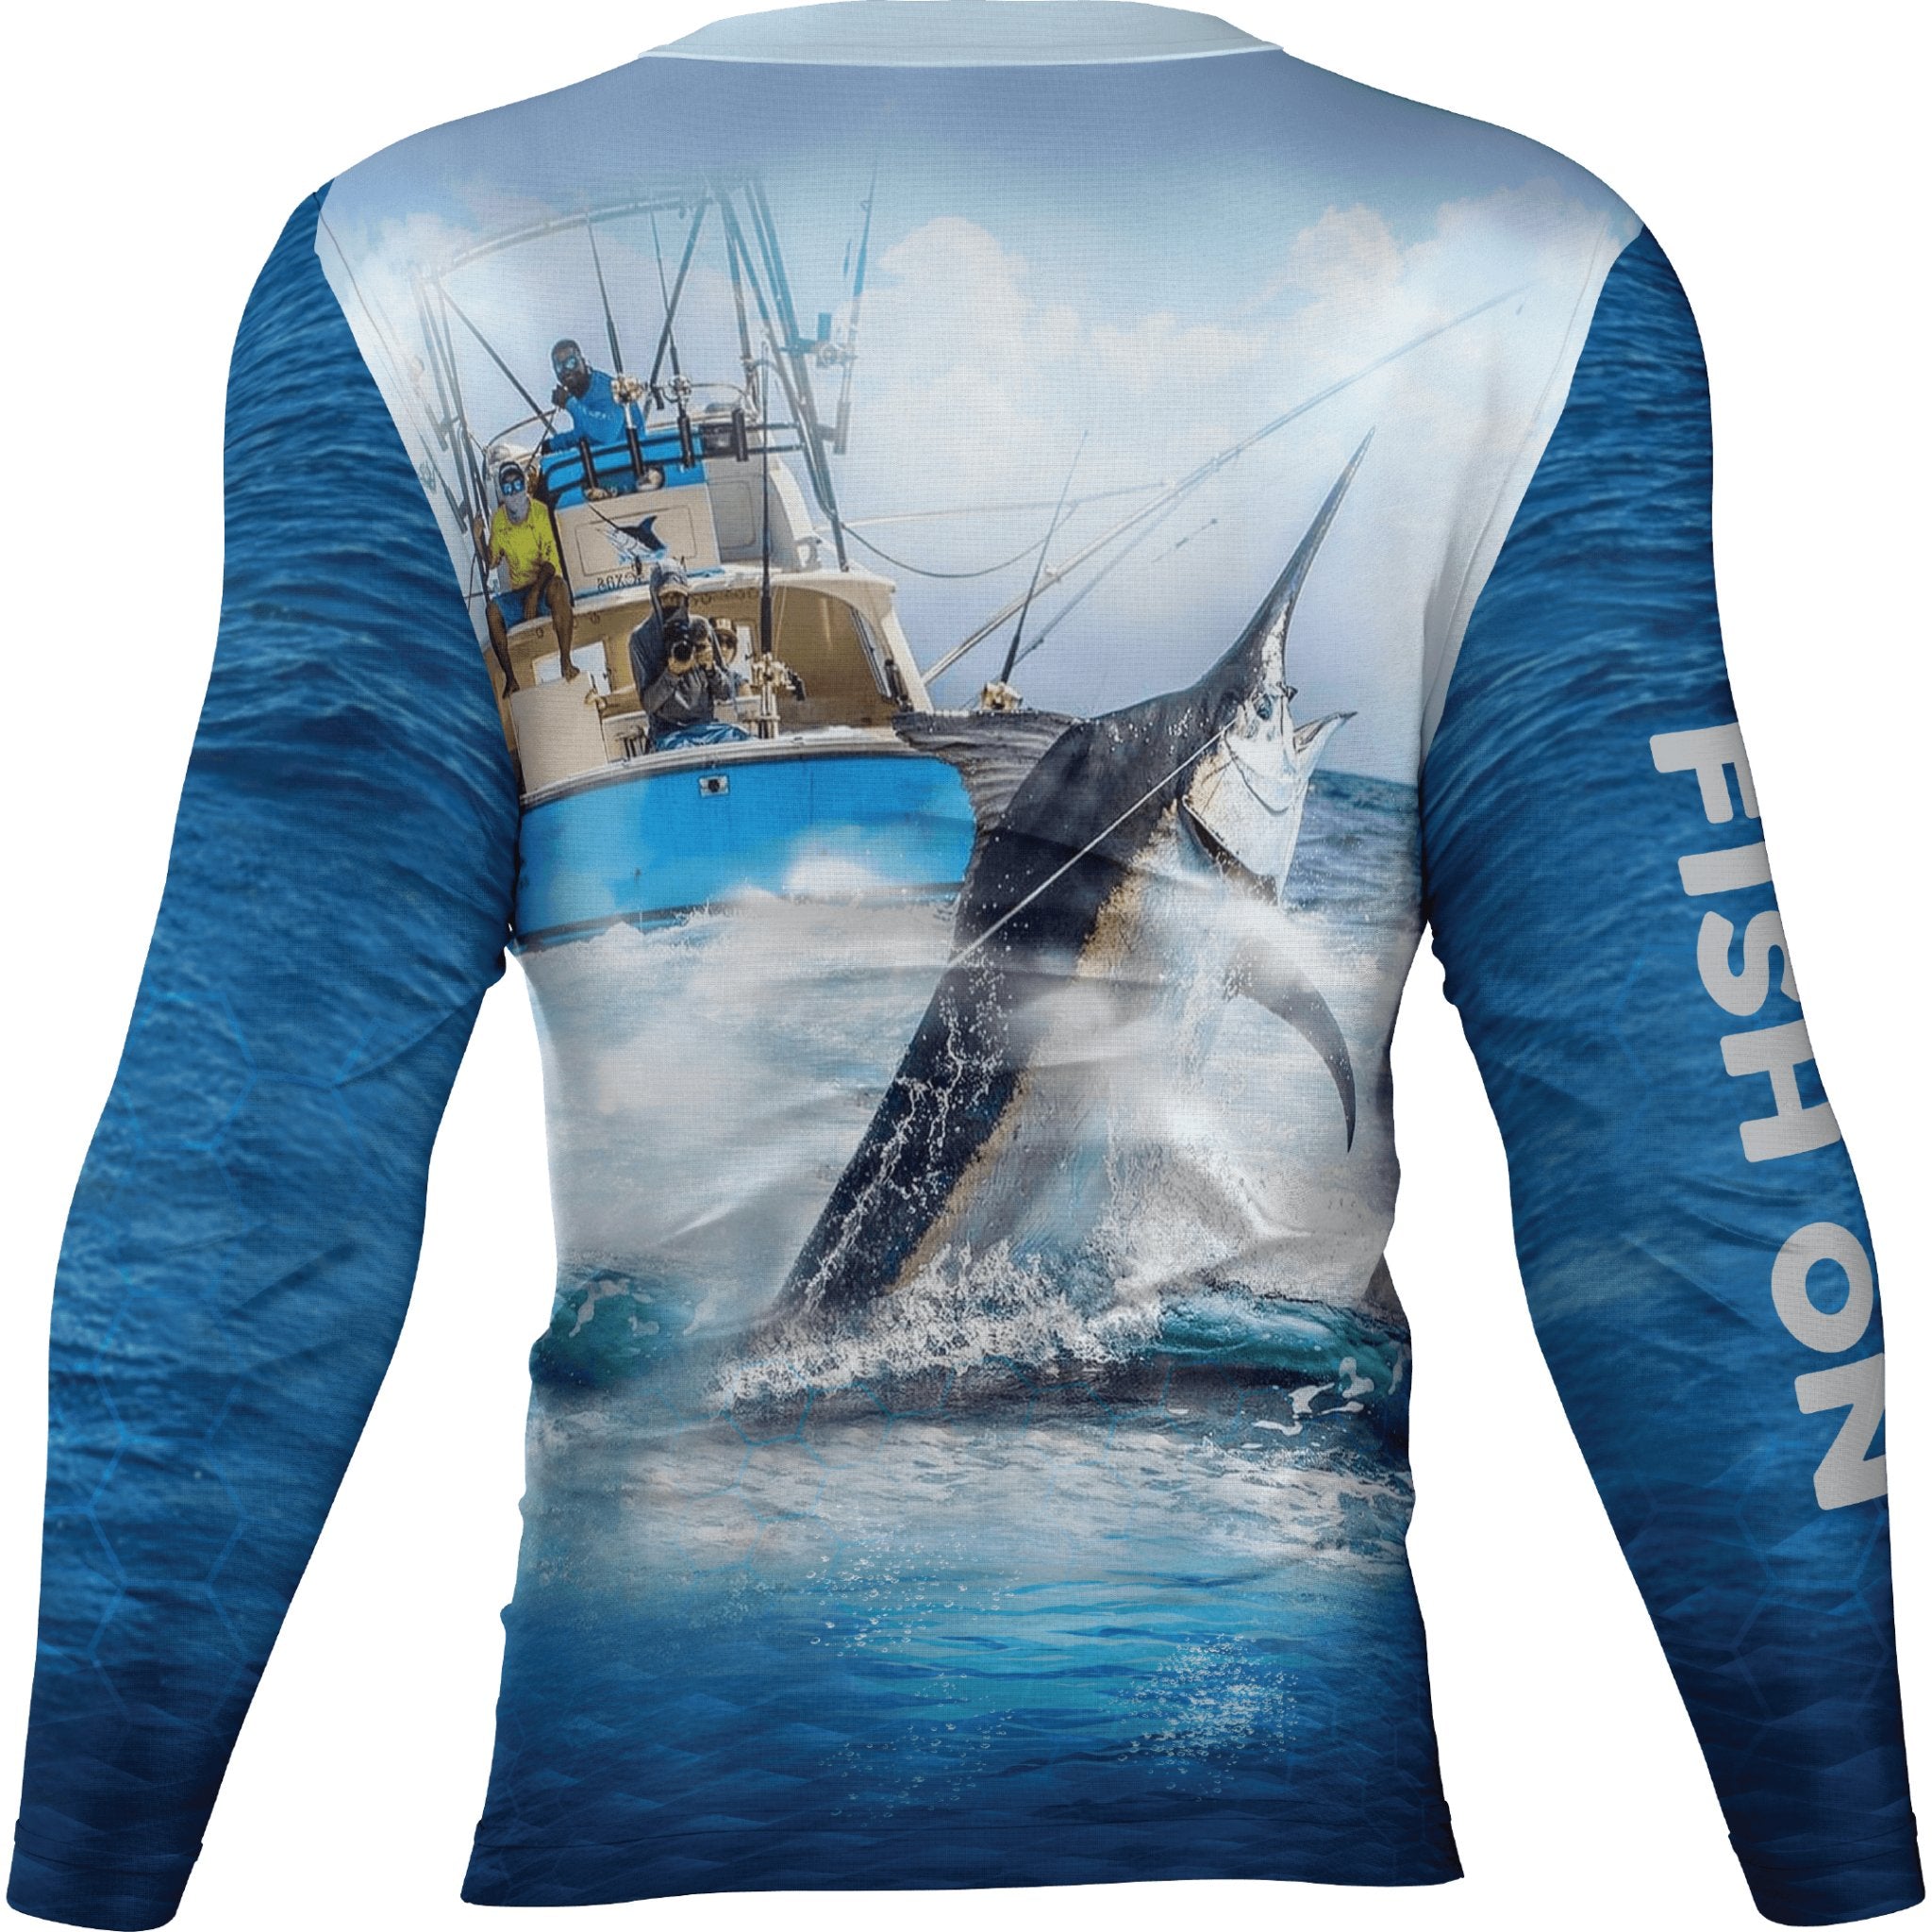 https://slickfishgear.com/cdn/shop/products/marlin-fish-on-upf-50-long-sleeve-shirt-slick-fish-gear-co-891992.jpg?v=1693230147